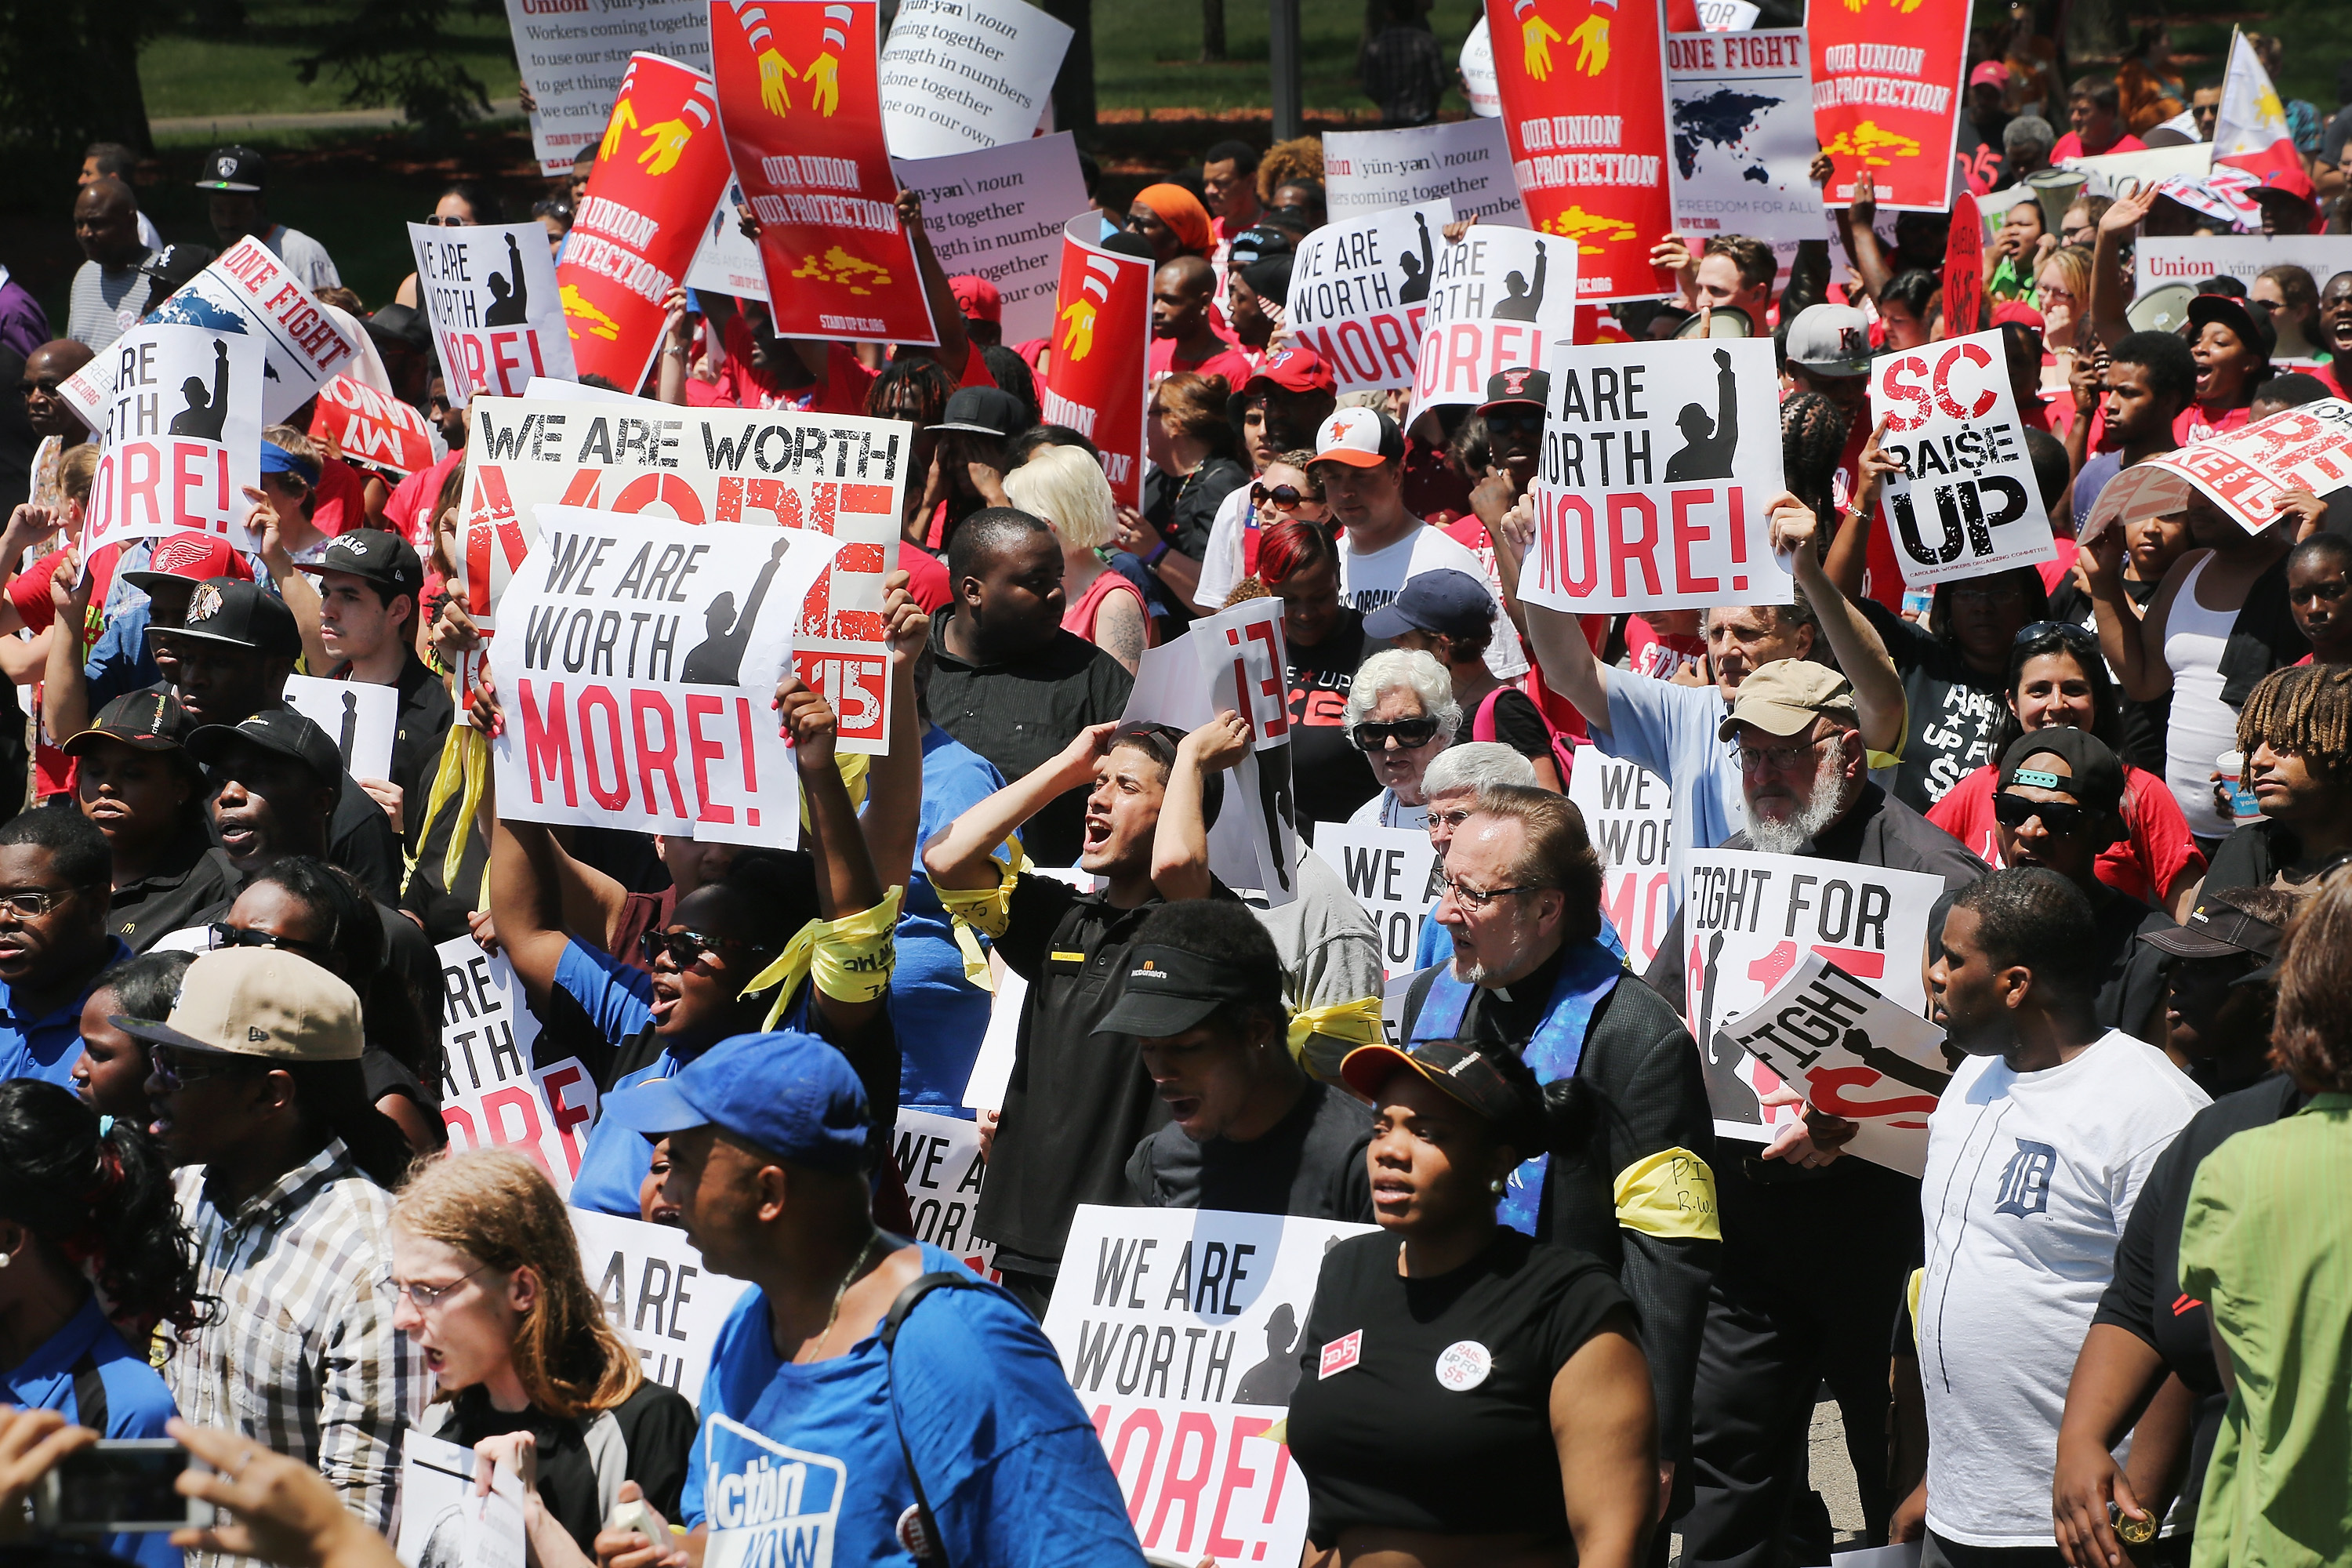 minimum-wage-workers-plan-strike-in-charleston-ahead-of-democratic-debate